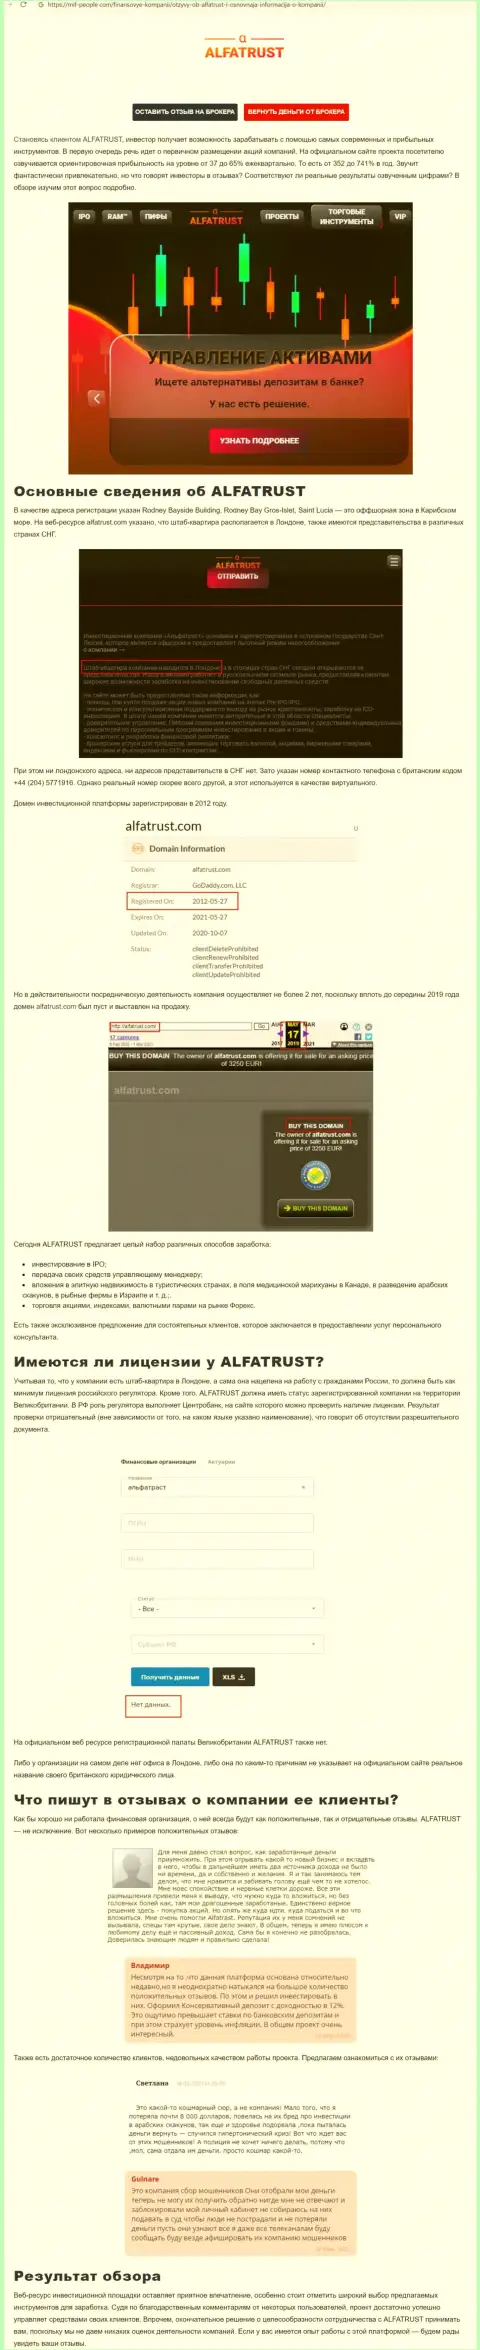 Сайт Mif People Com показал данные об forex организации ALFATRUST LTD